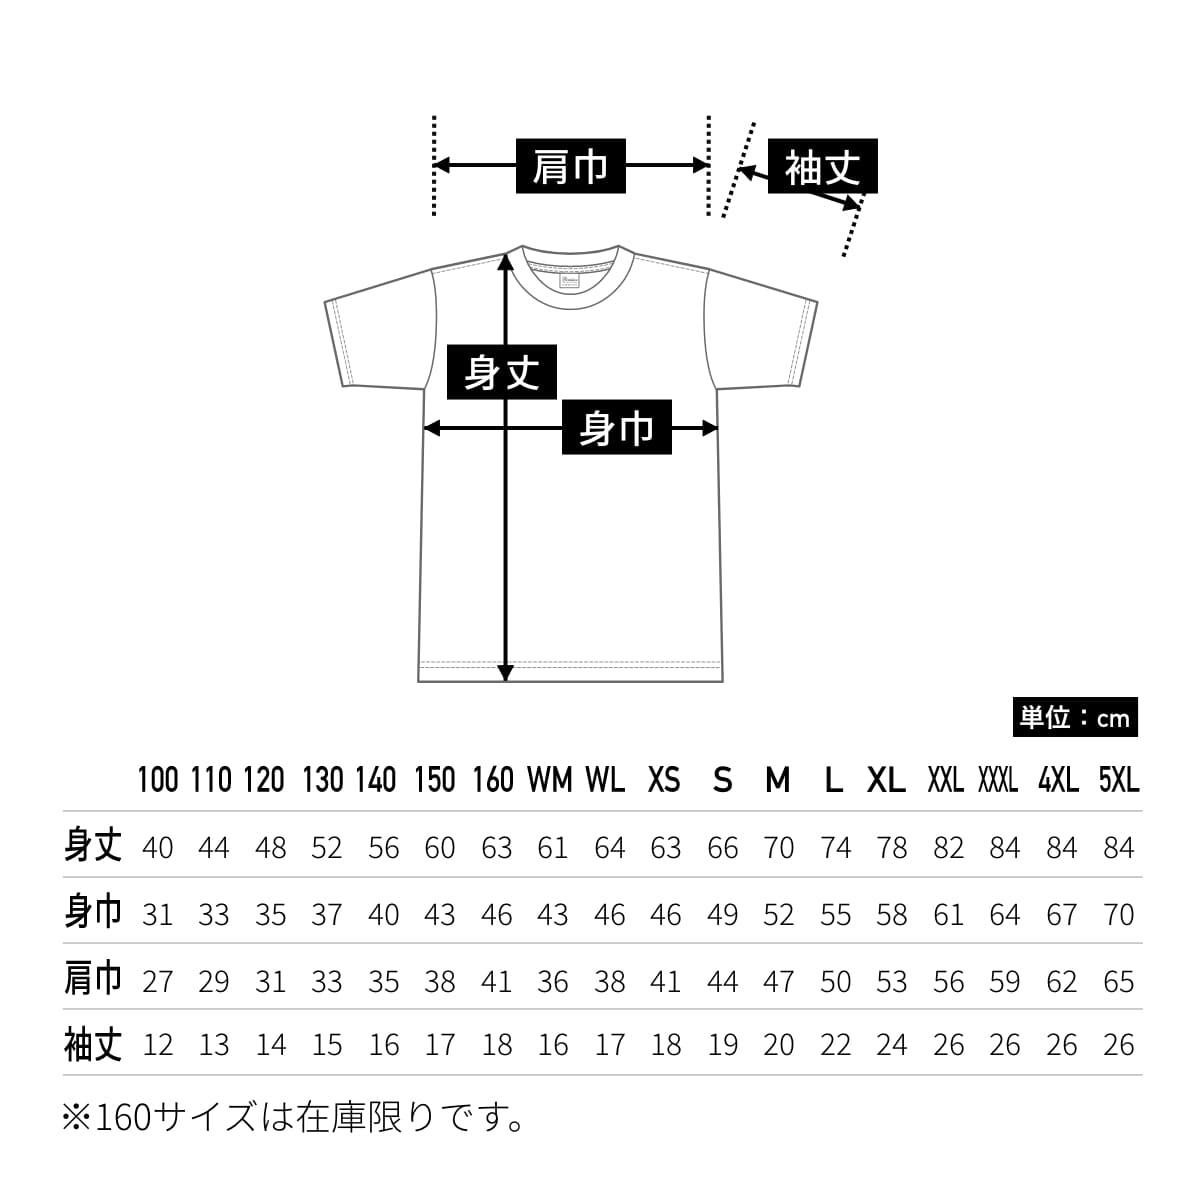 5.6オンス ヘビーウェイトTシャツ | ビッグサイズ | 1枚 | 00085-CVT | ホワイト×レッド